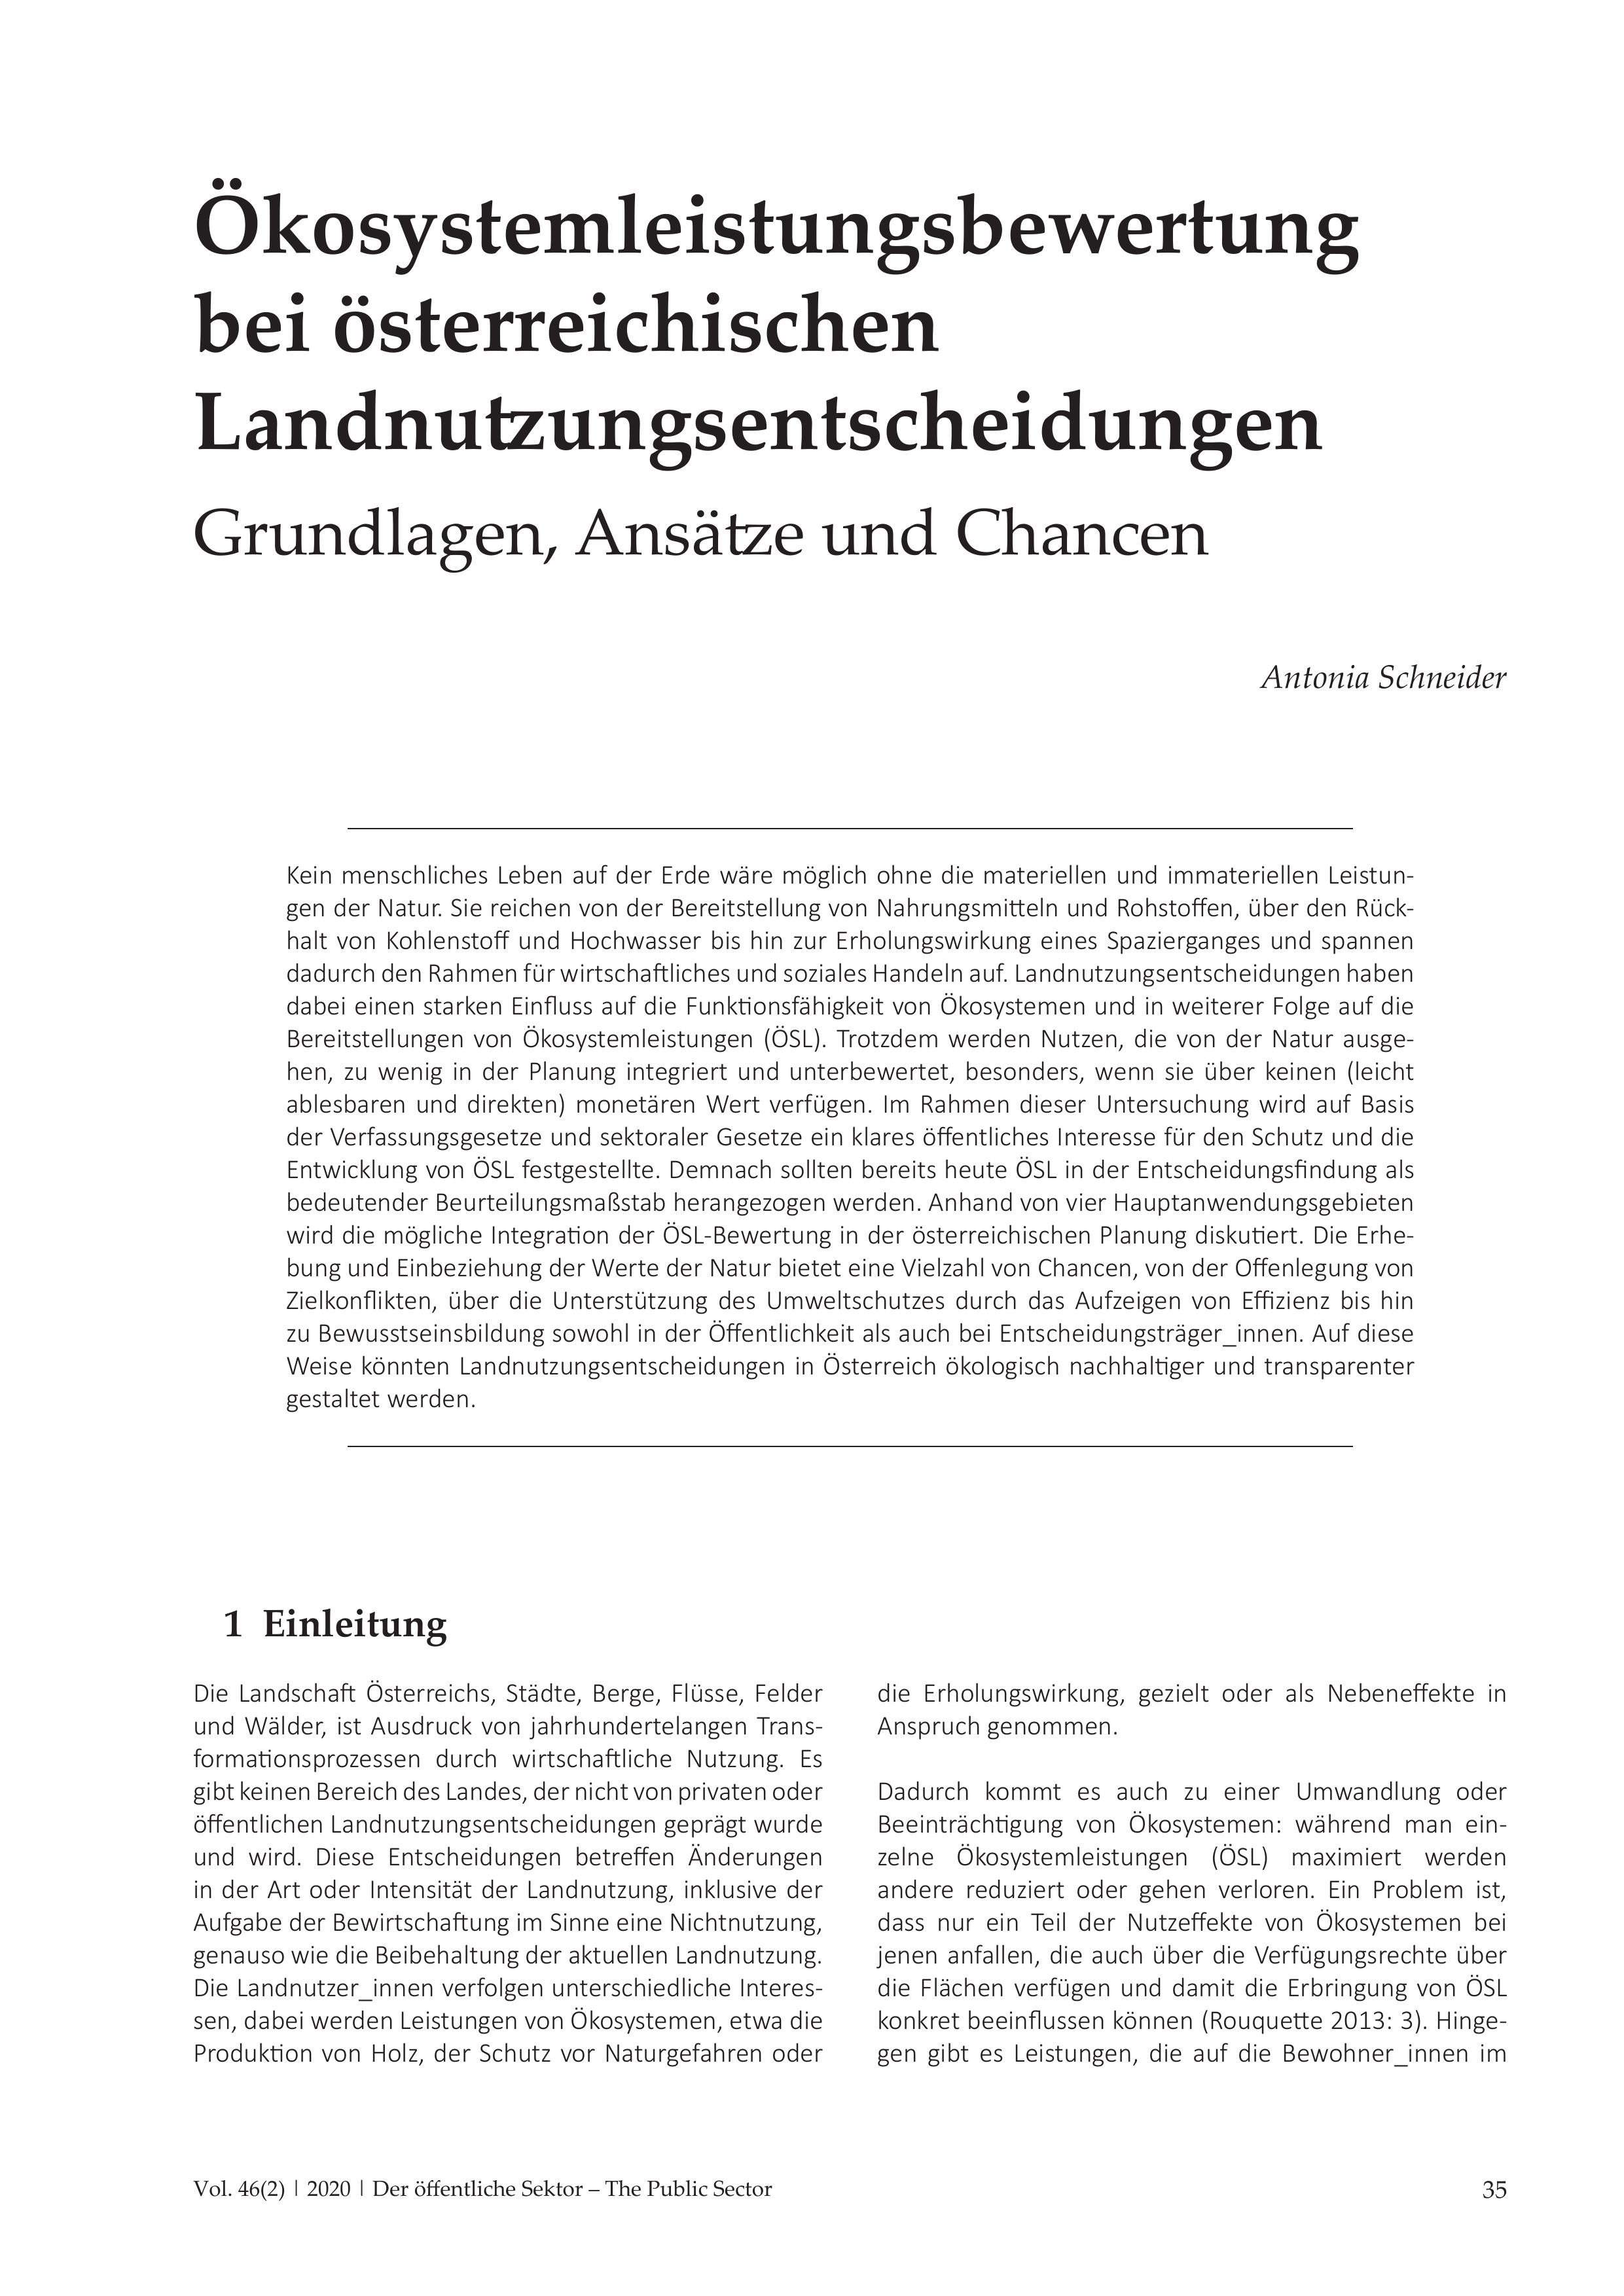 Ökosystemleistungsbewertung bei österreichischen Landnutzungsentscheidungen